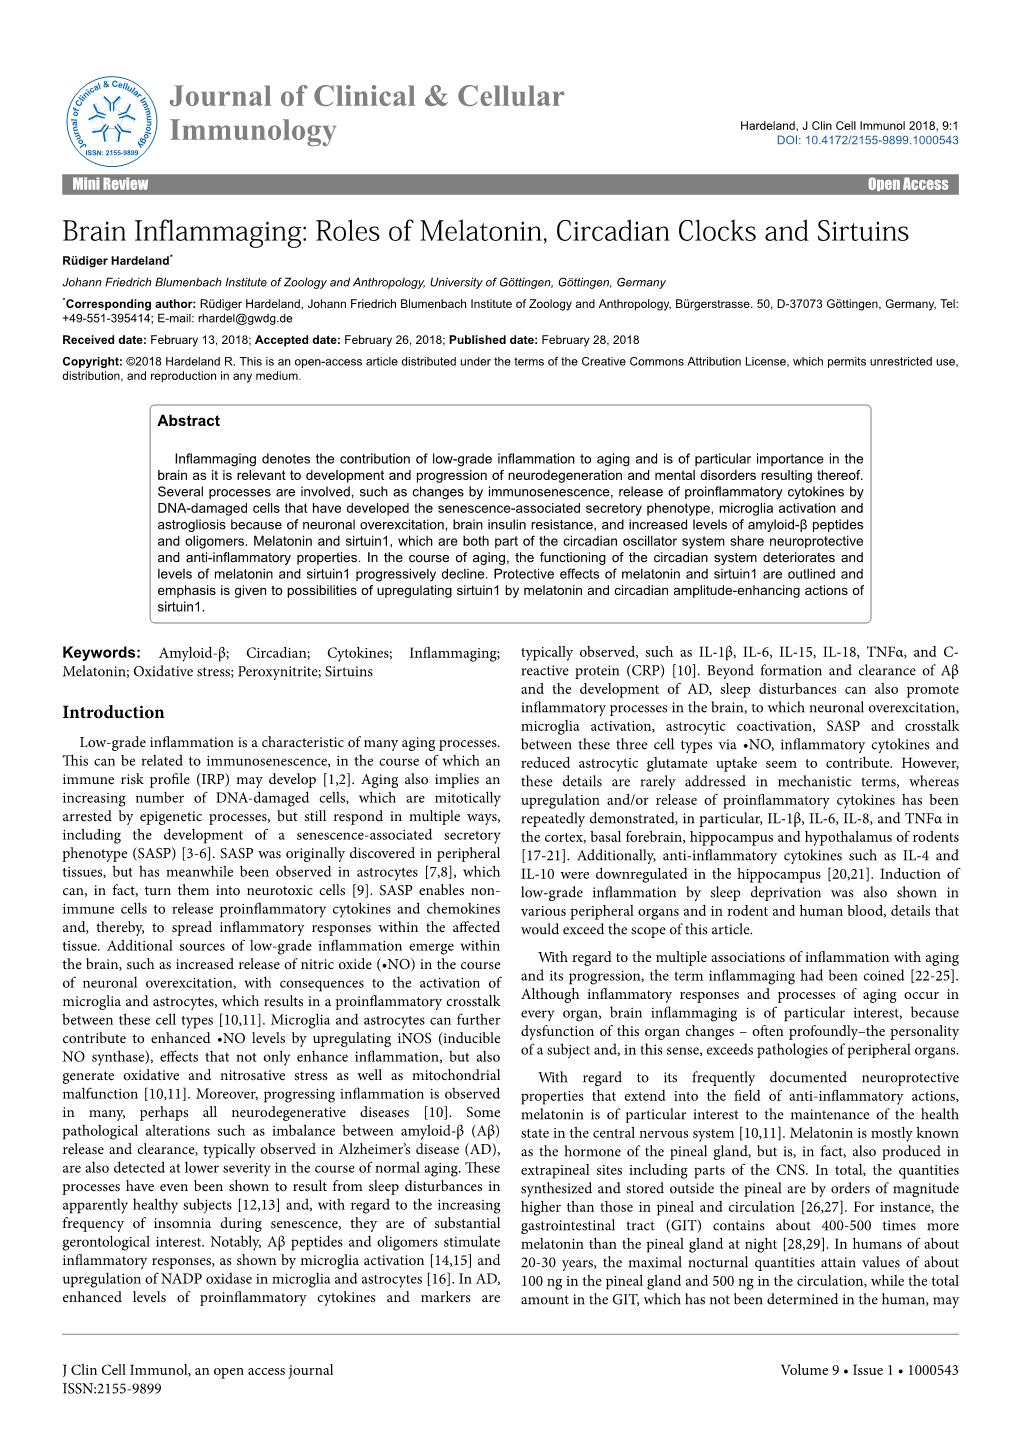 Brain Inflammaging: Roles of Melatonin, Circadian Clocks